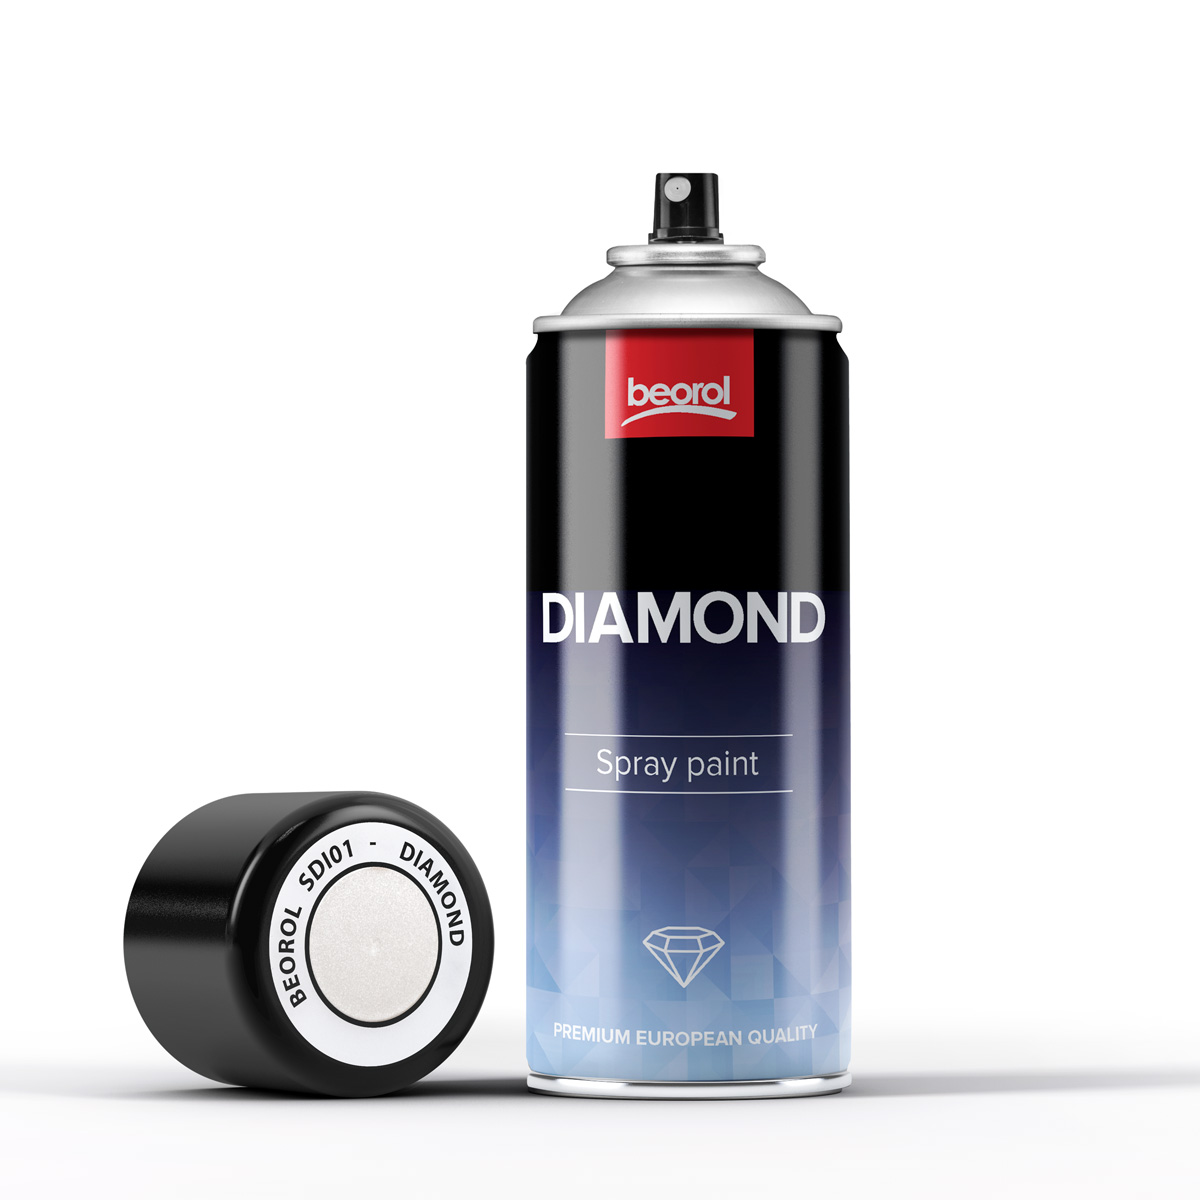 Diamond paint sprays